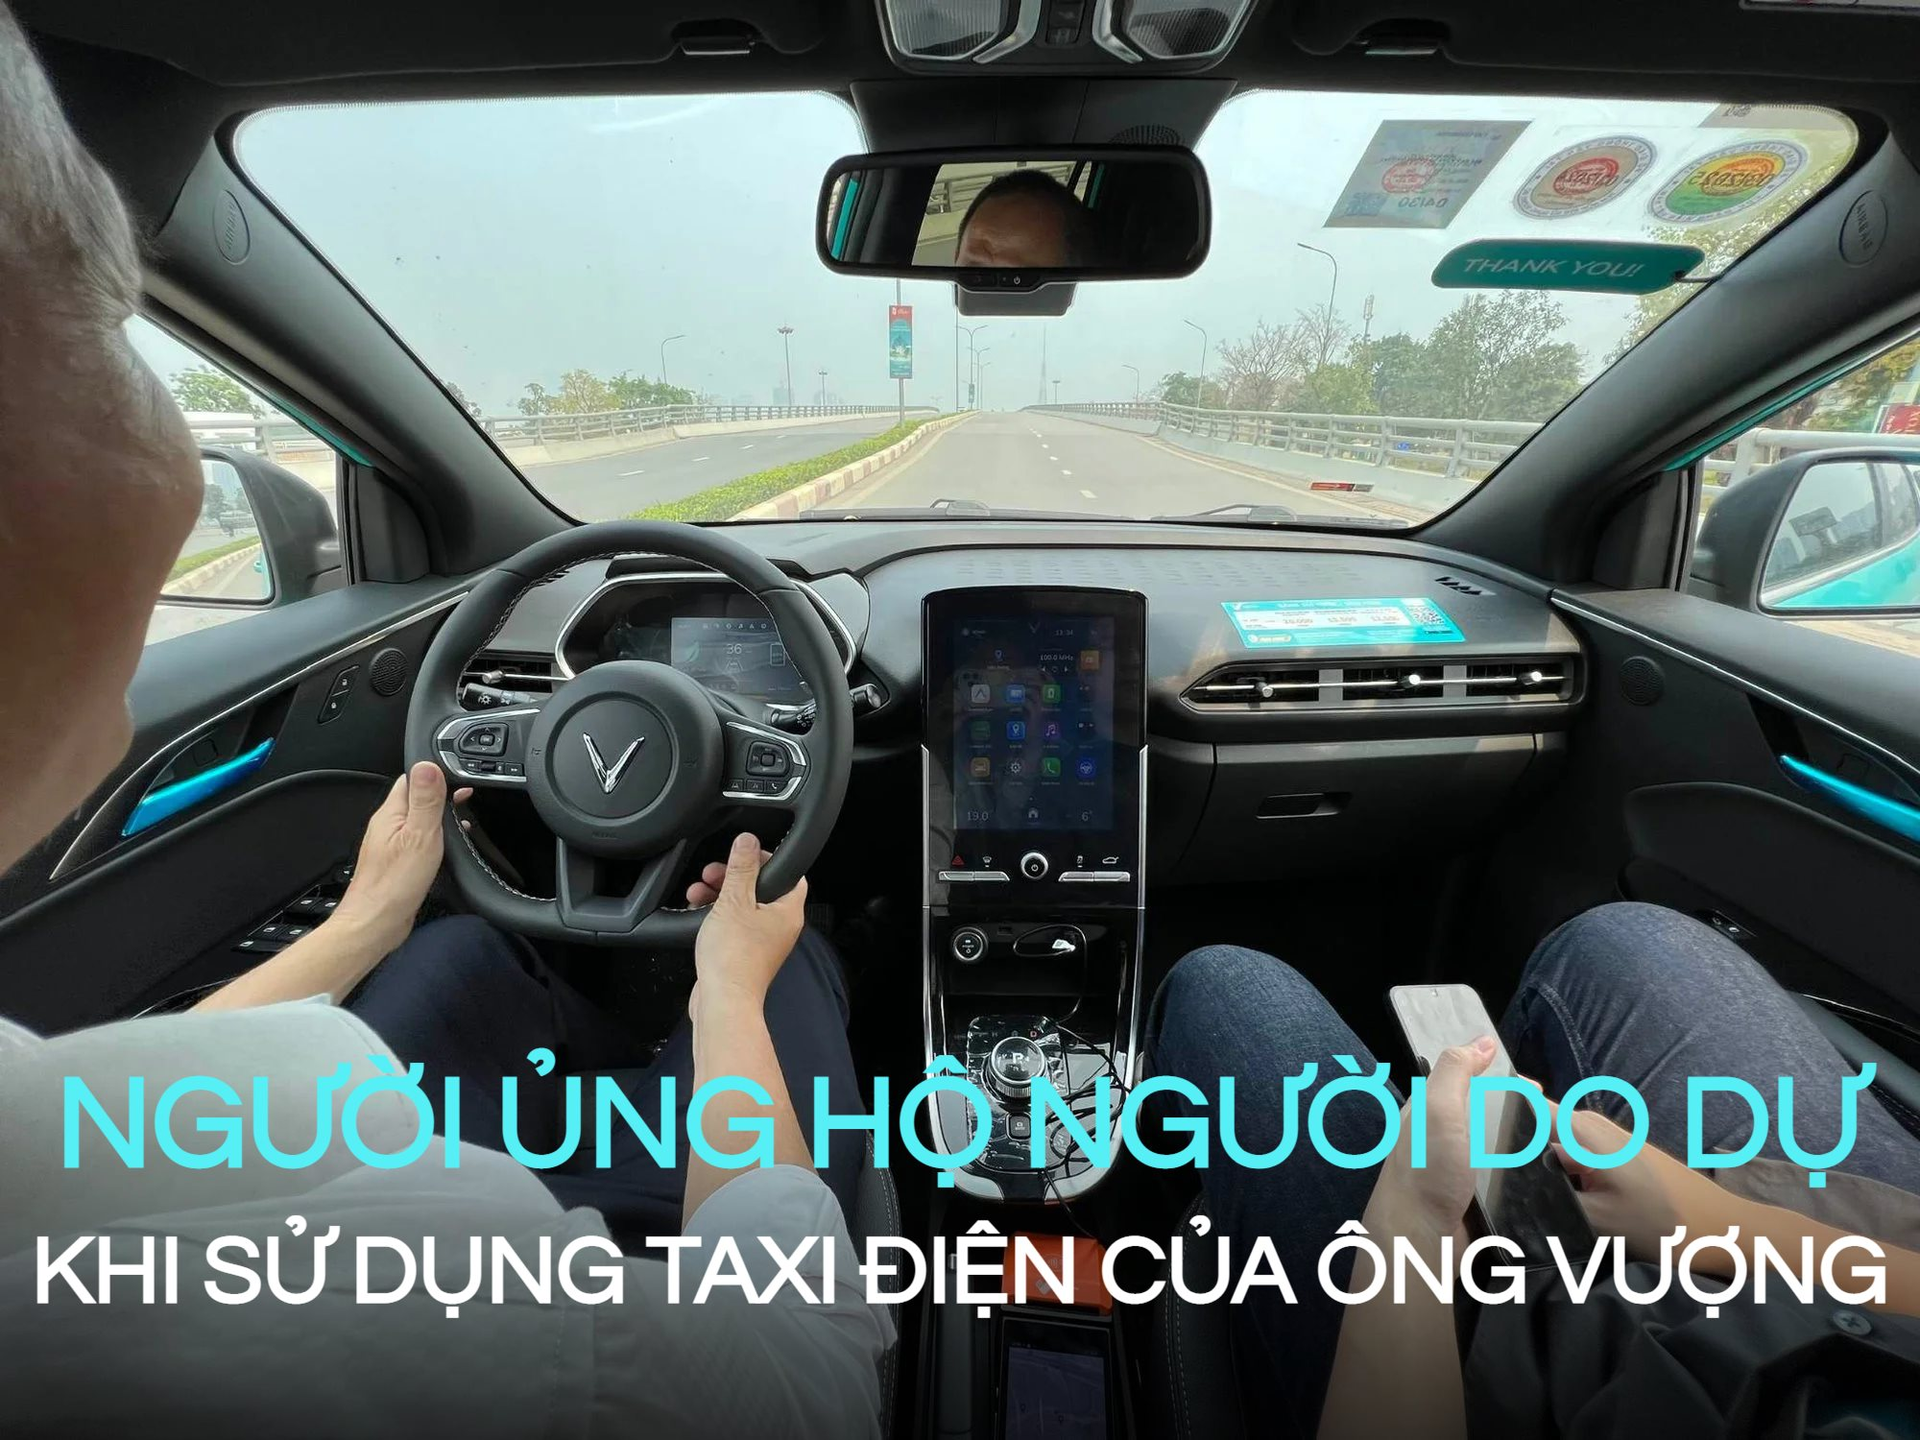 Taxi Xanh SM của ông Phạm Nhật Vượng vừa ra mắt chưa đầy 24h, phản ứng của người dùng: “Tiền nào của nấy” - Ảnh 1.